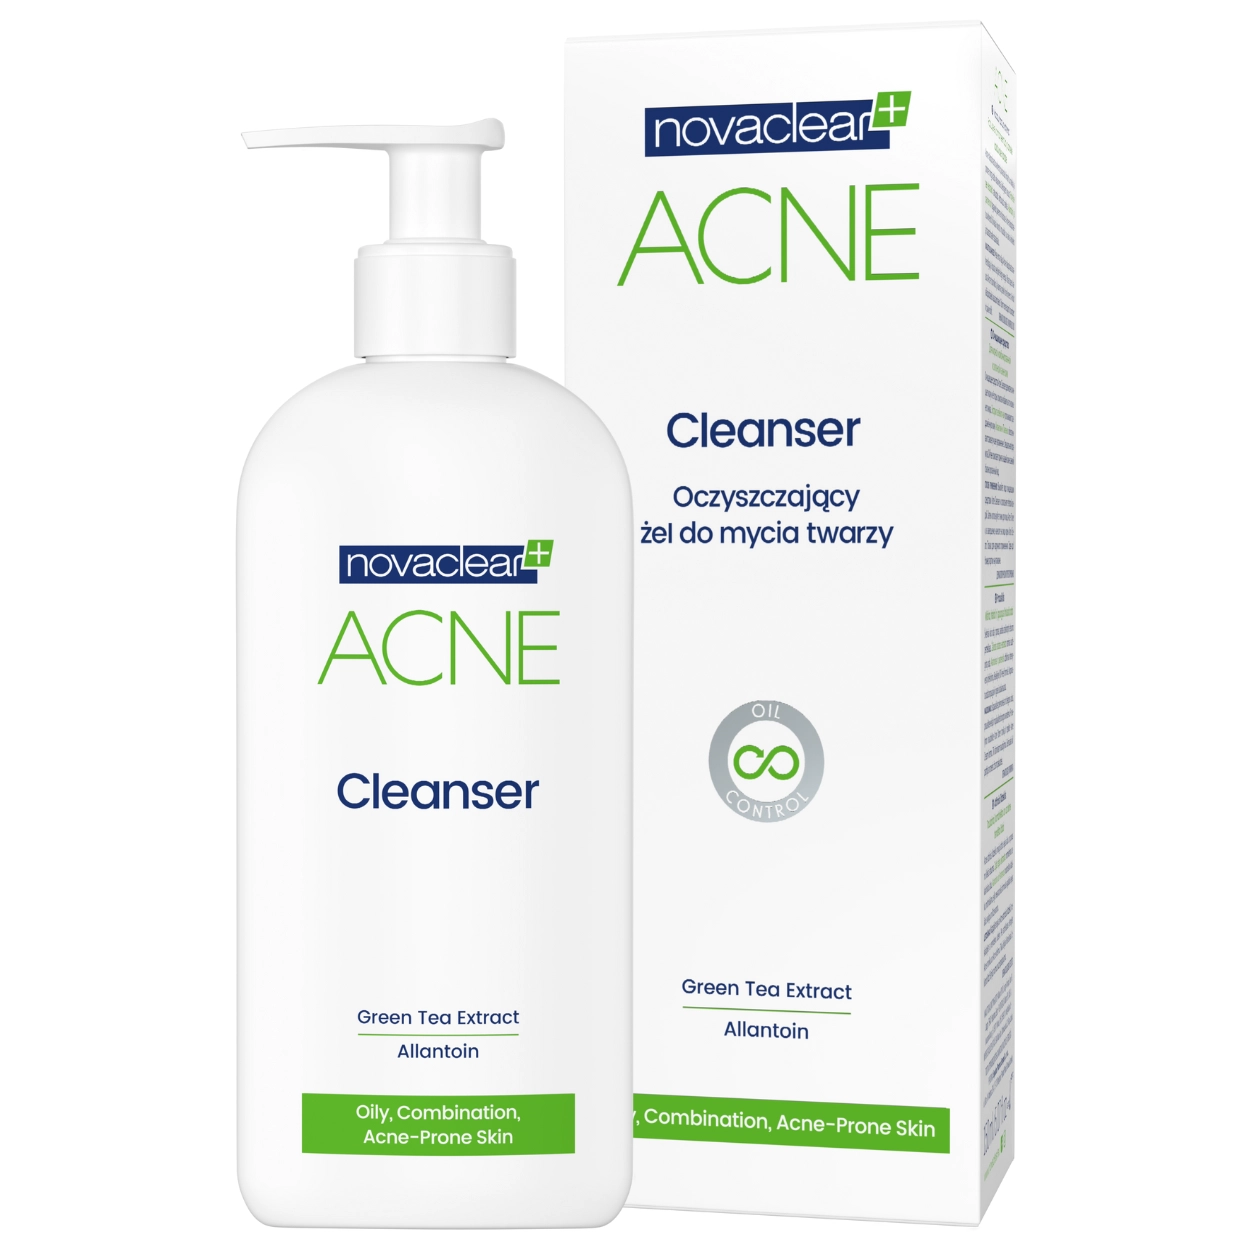 novaclear-acne-oczyszczajacy-zel-do-mycia-twarzy-pl